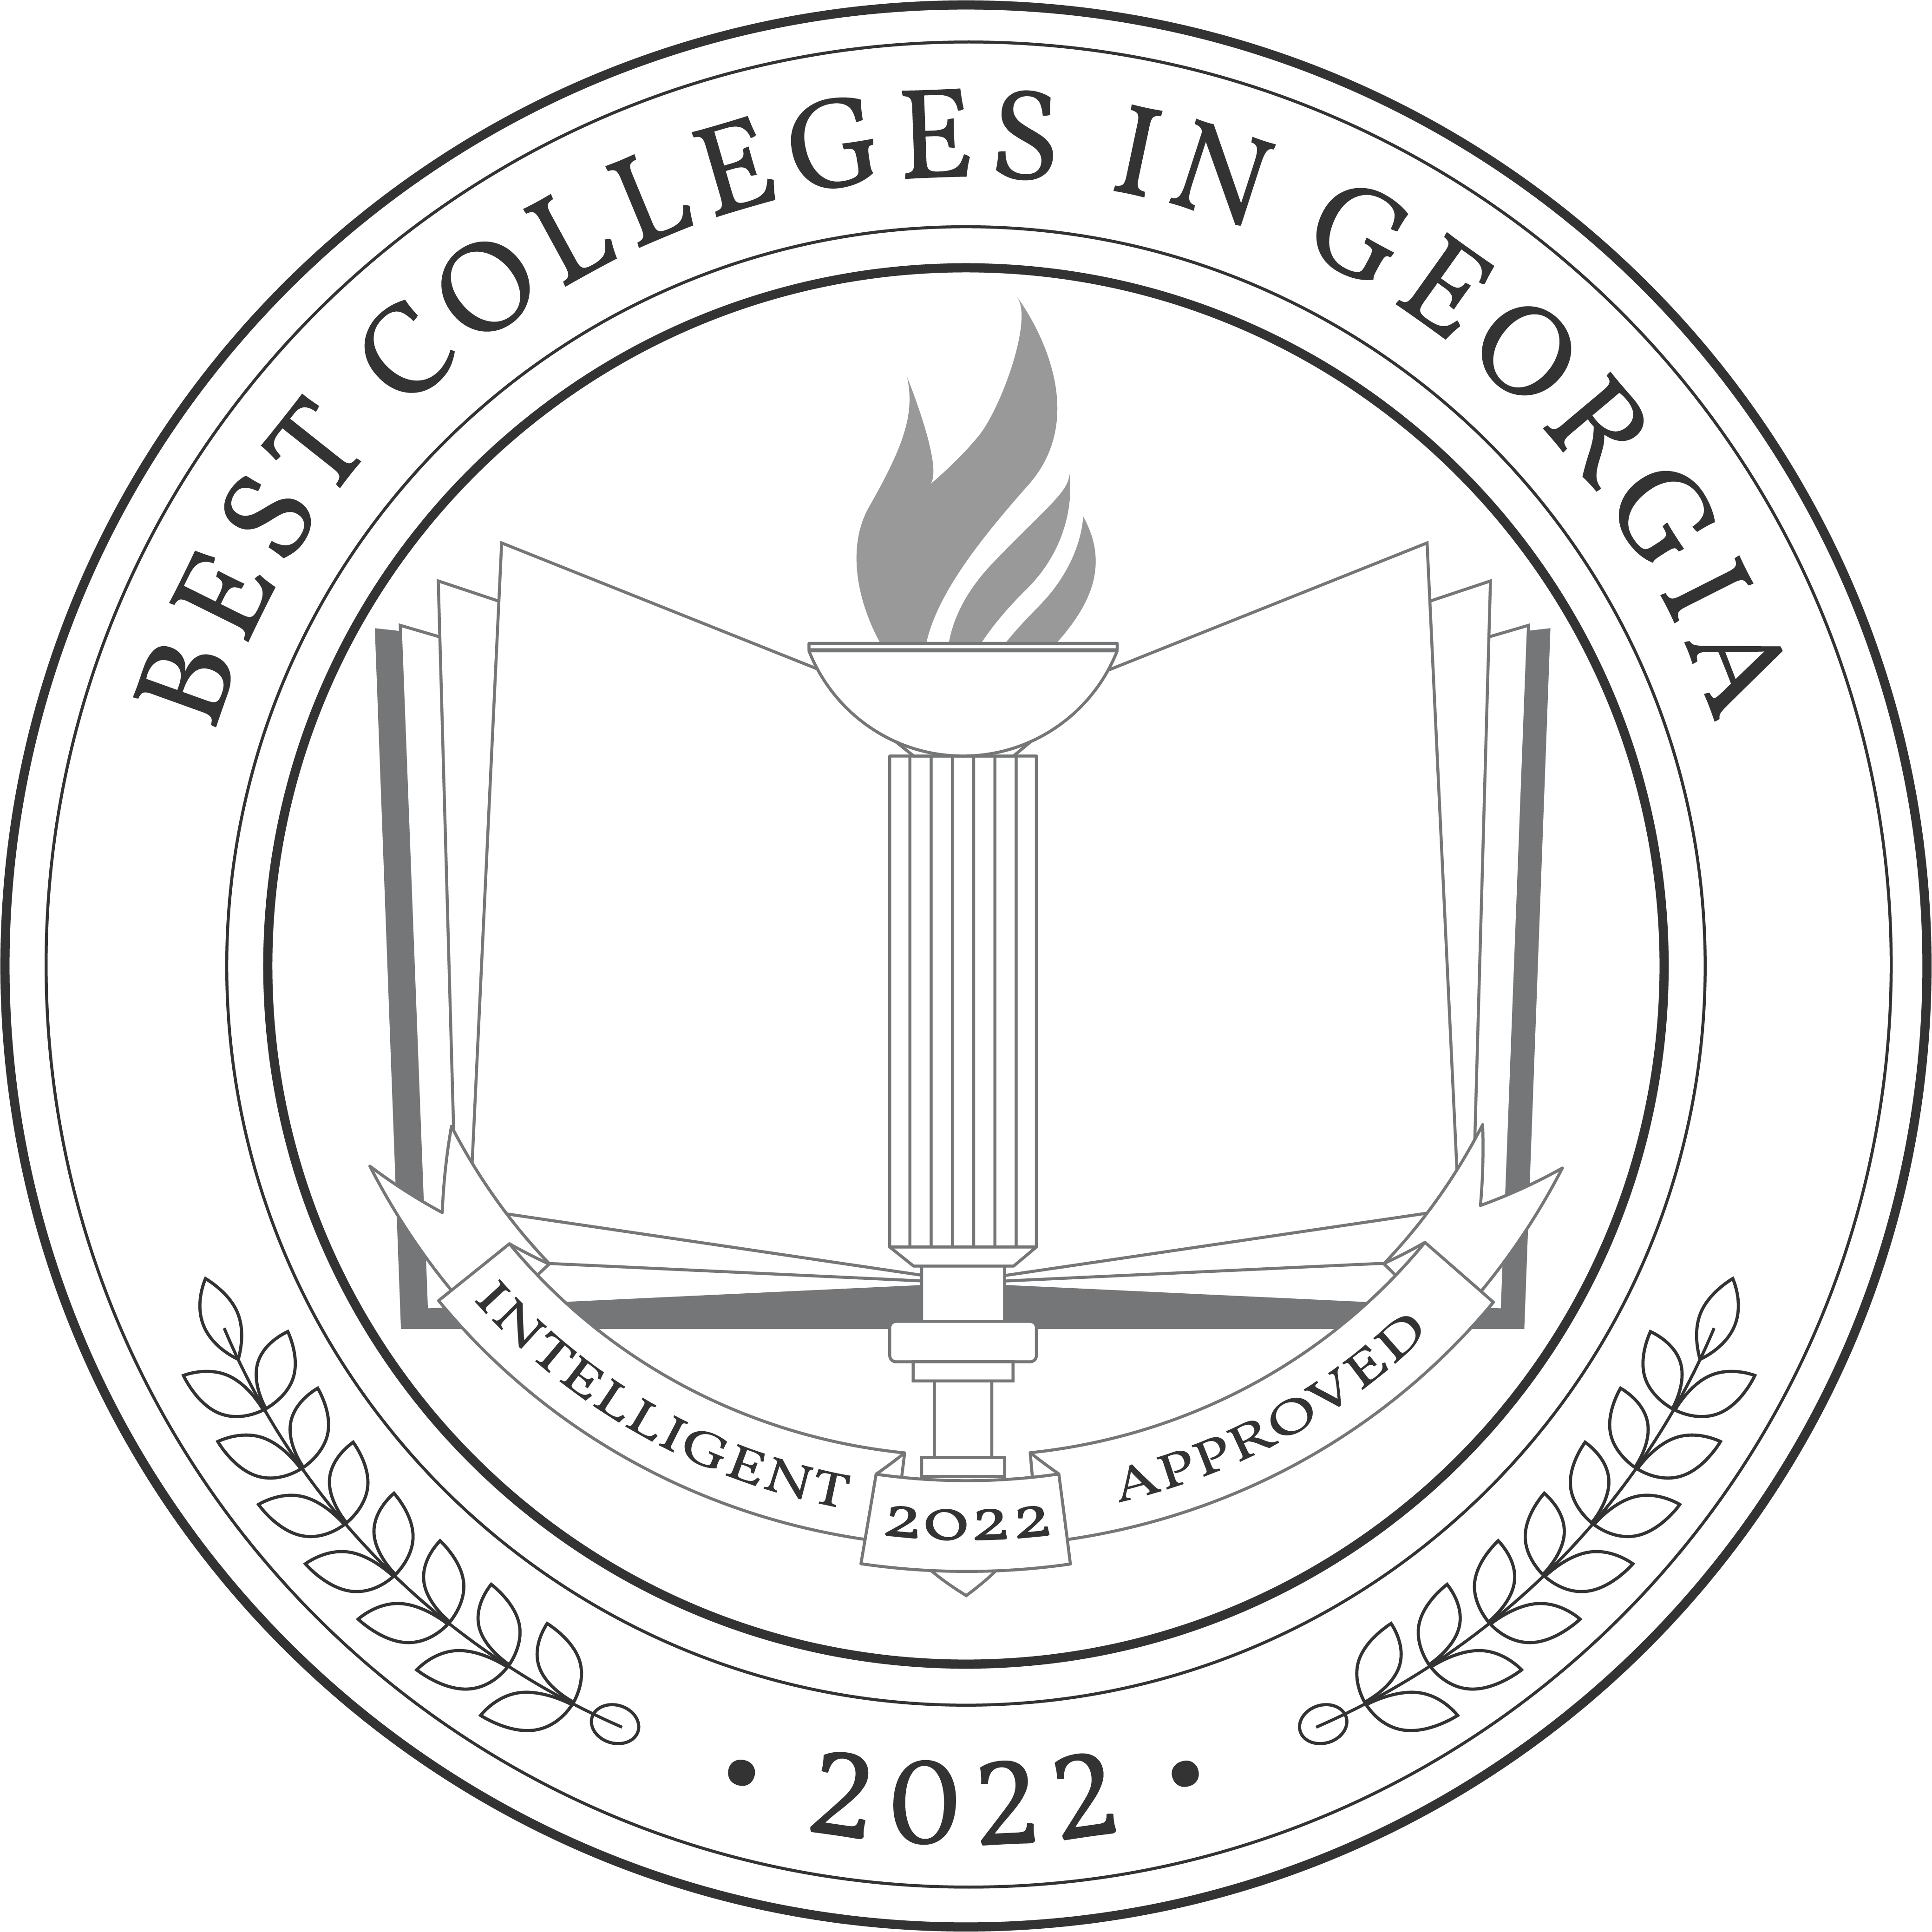 Best Colleges In Georgia